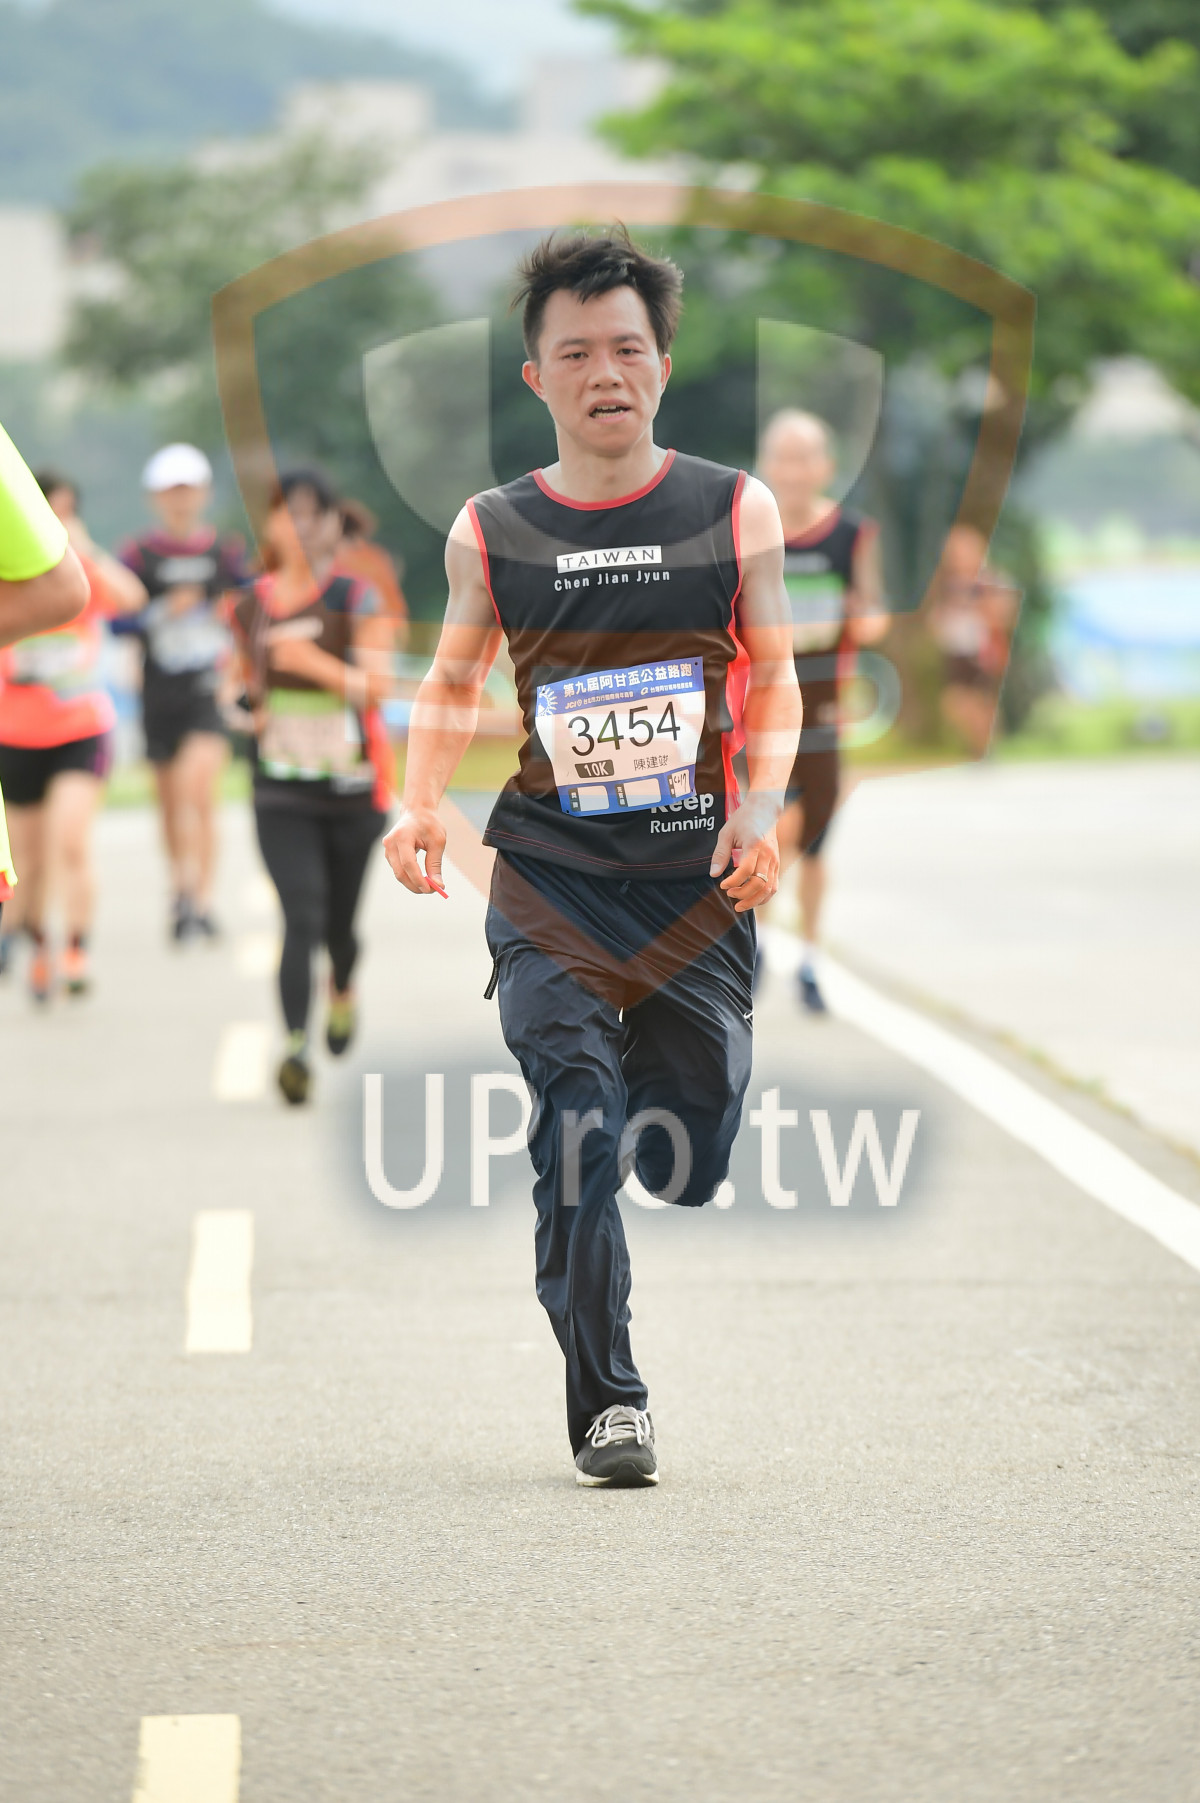 TAIWA N,Chen Jlan Jyun,,3454,0K,Running|終點1|中年人